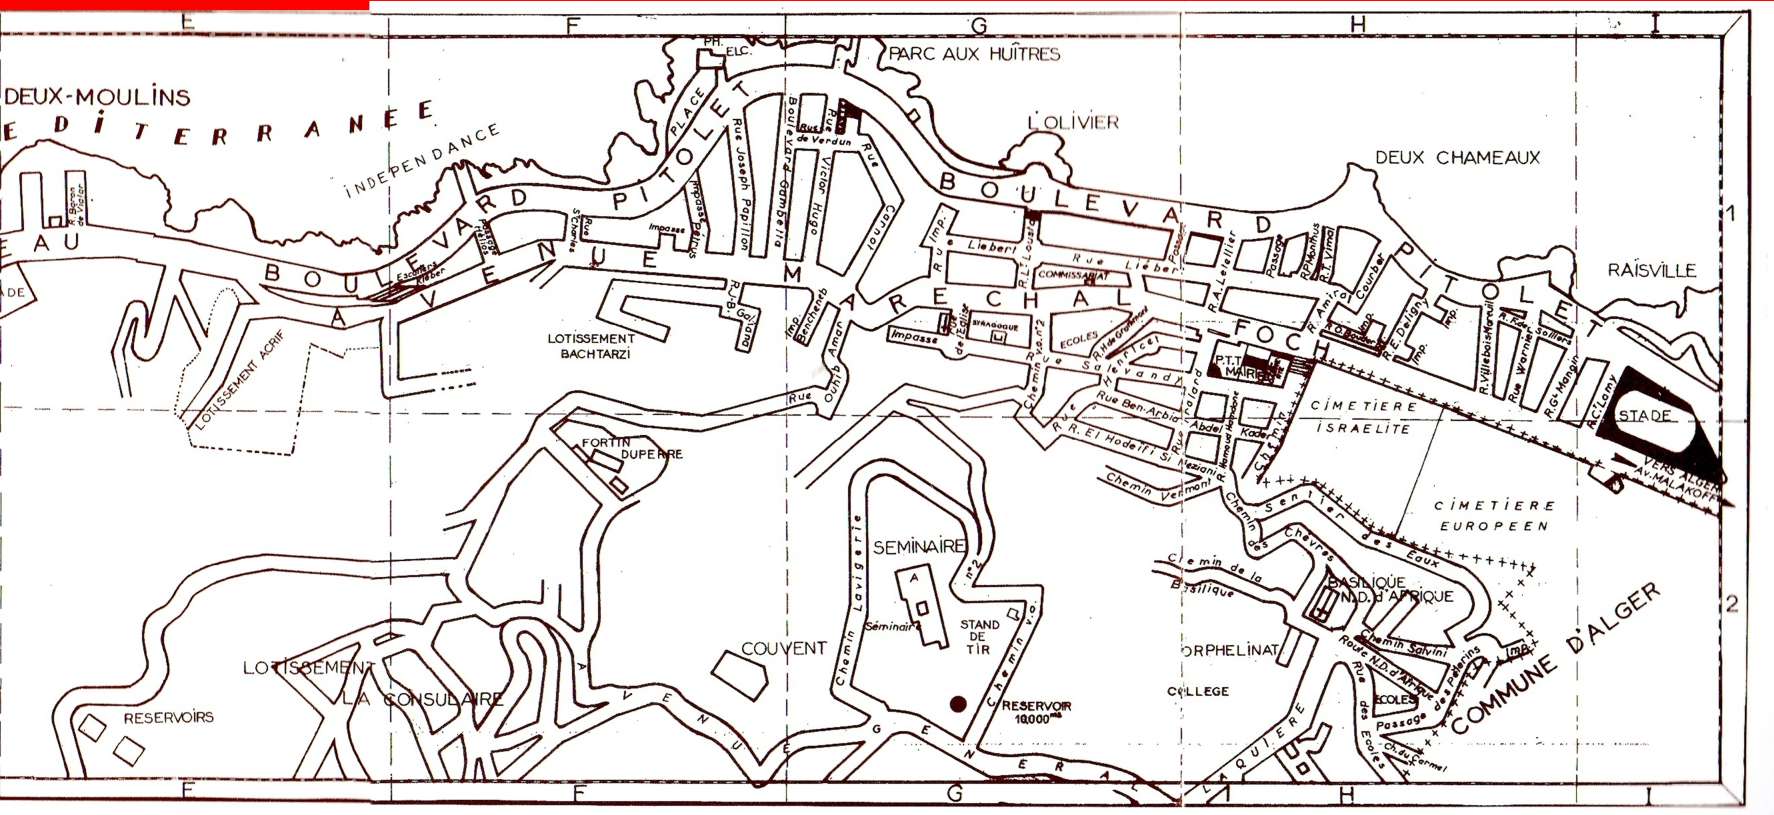 Plan de saint-eugene,deux moulins,parc aux huitres,deux chameaux,raisville